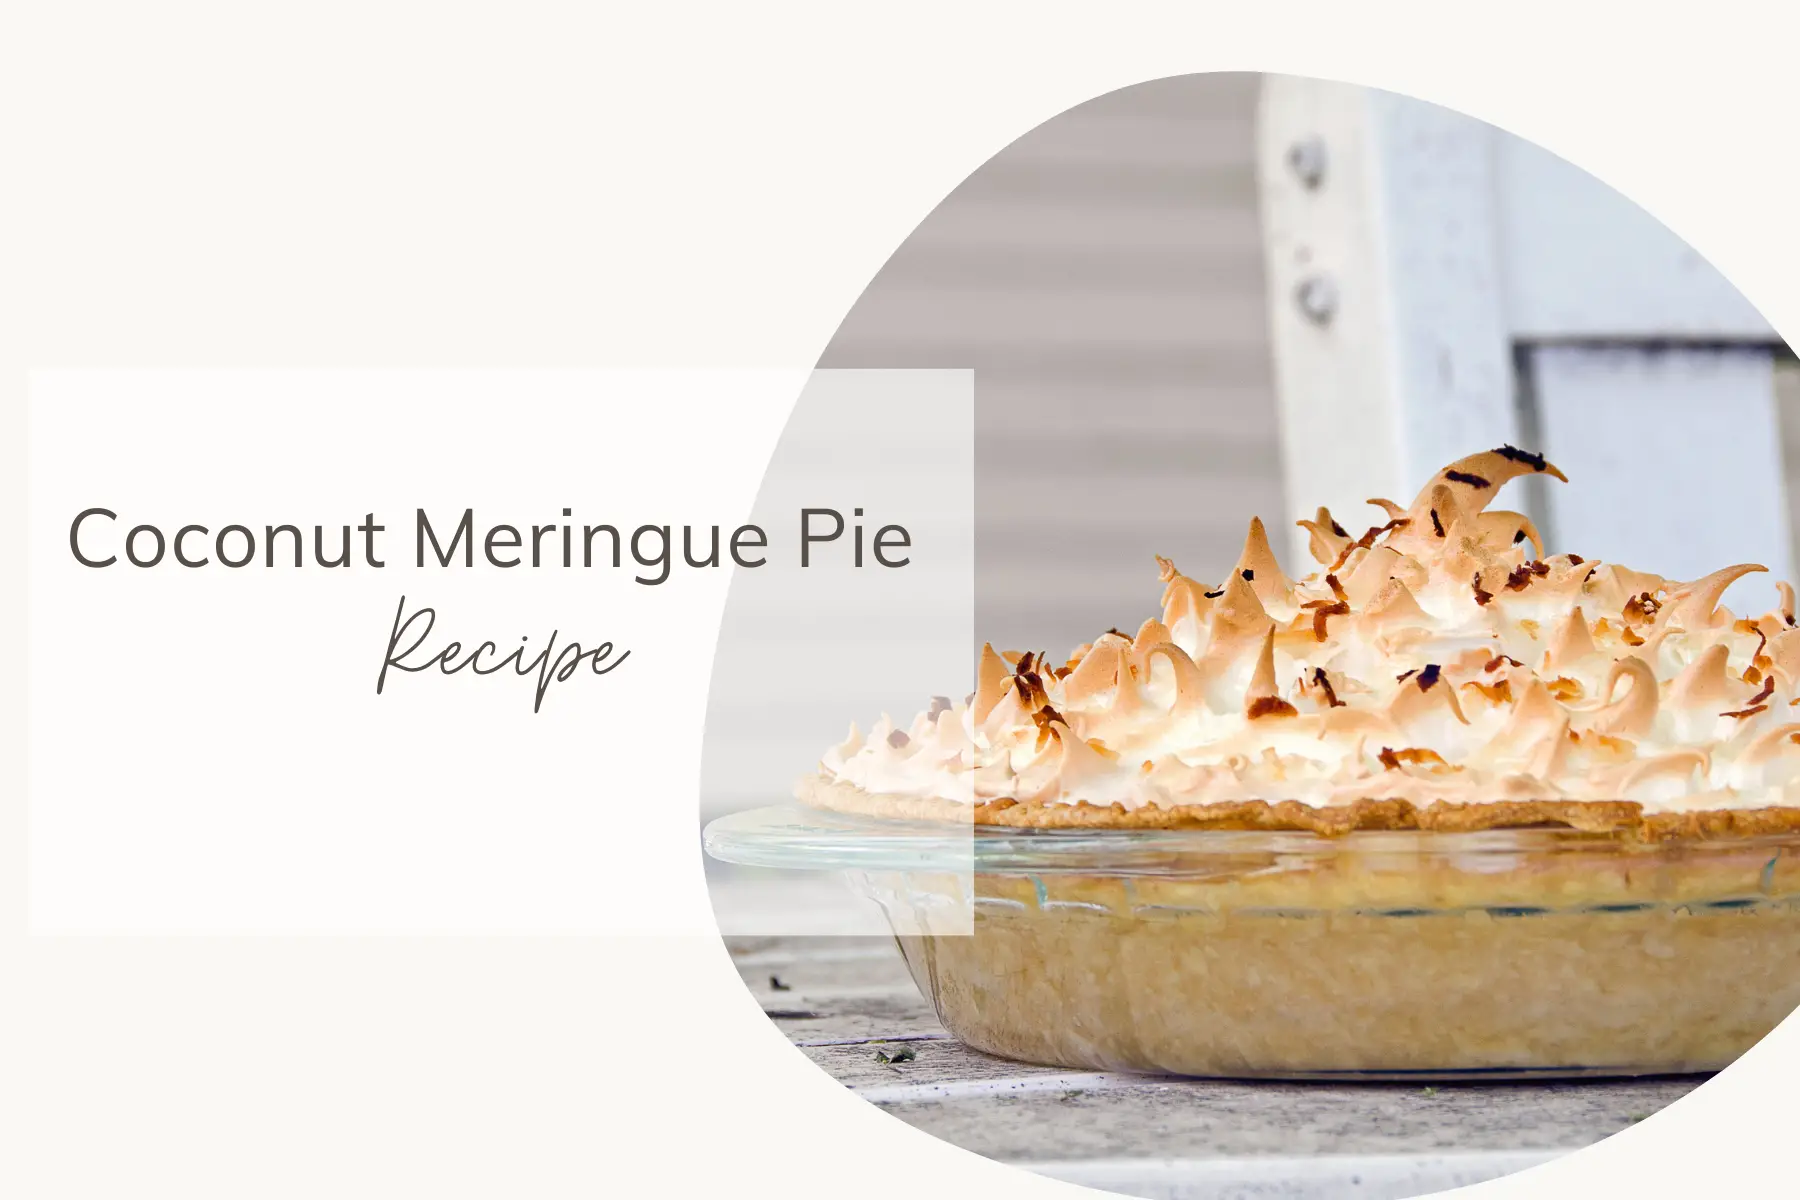 Coconut Meringue Pie Recipe